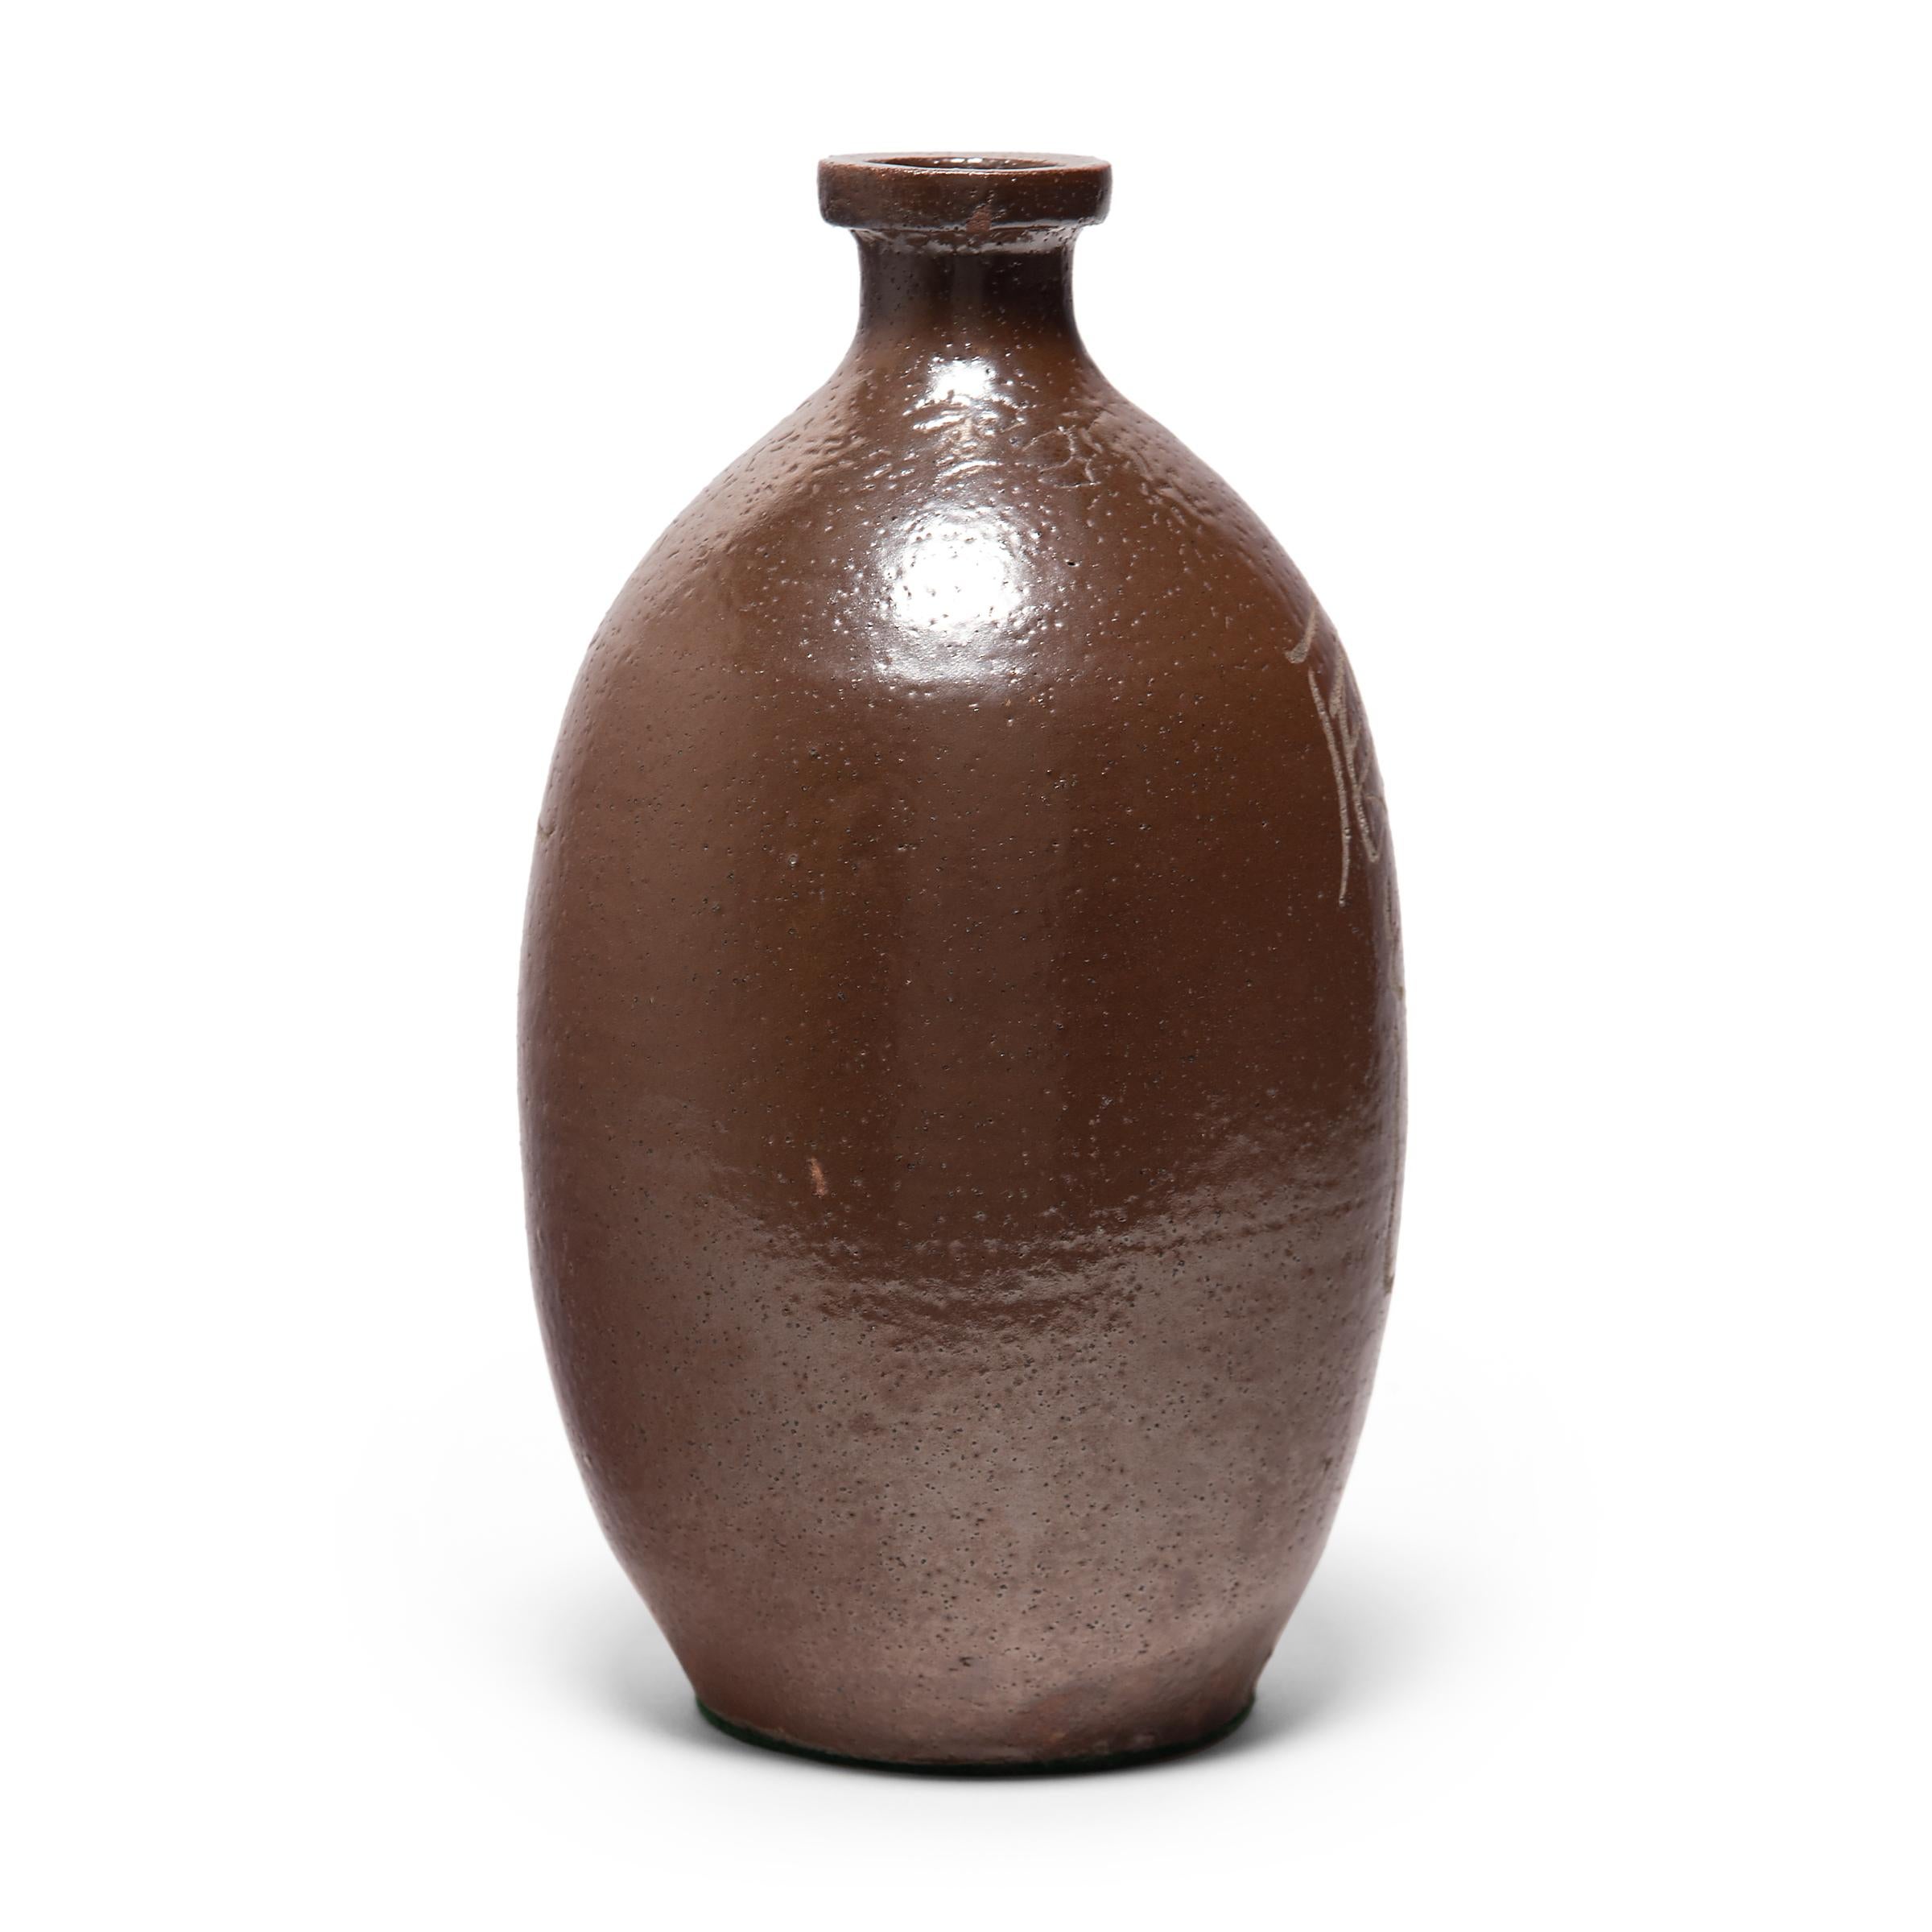 Glazed Early 20th Century Japanese Sake Bottle